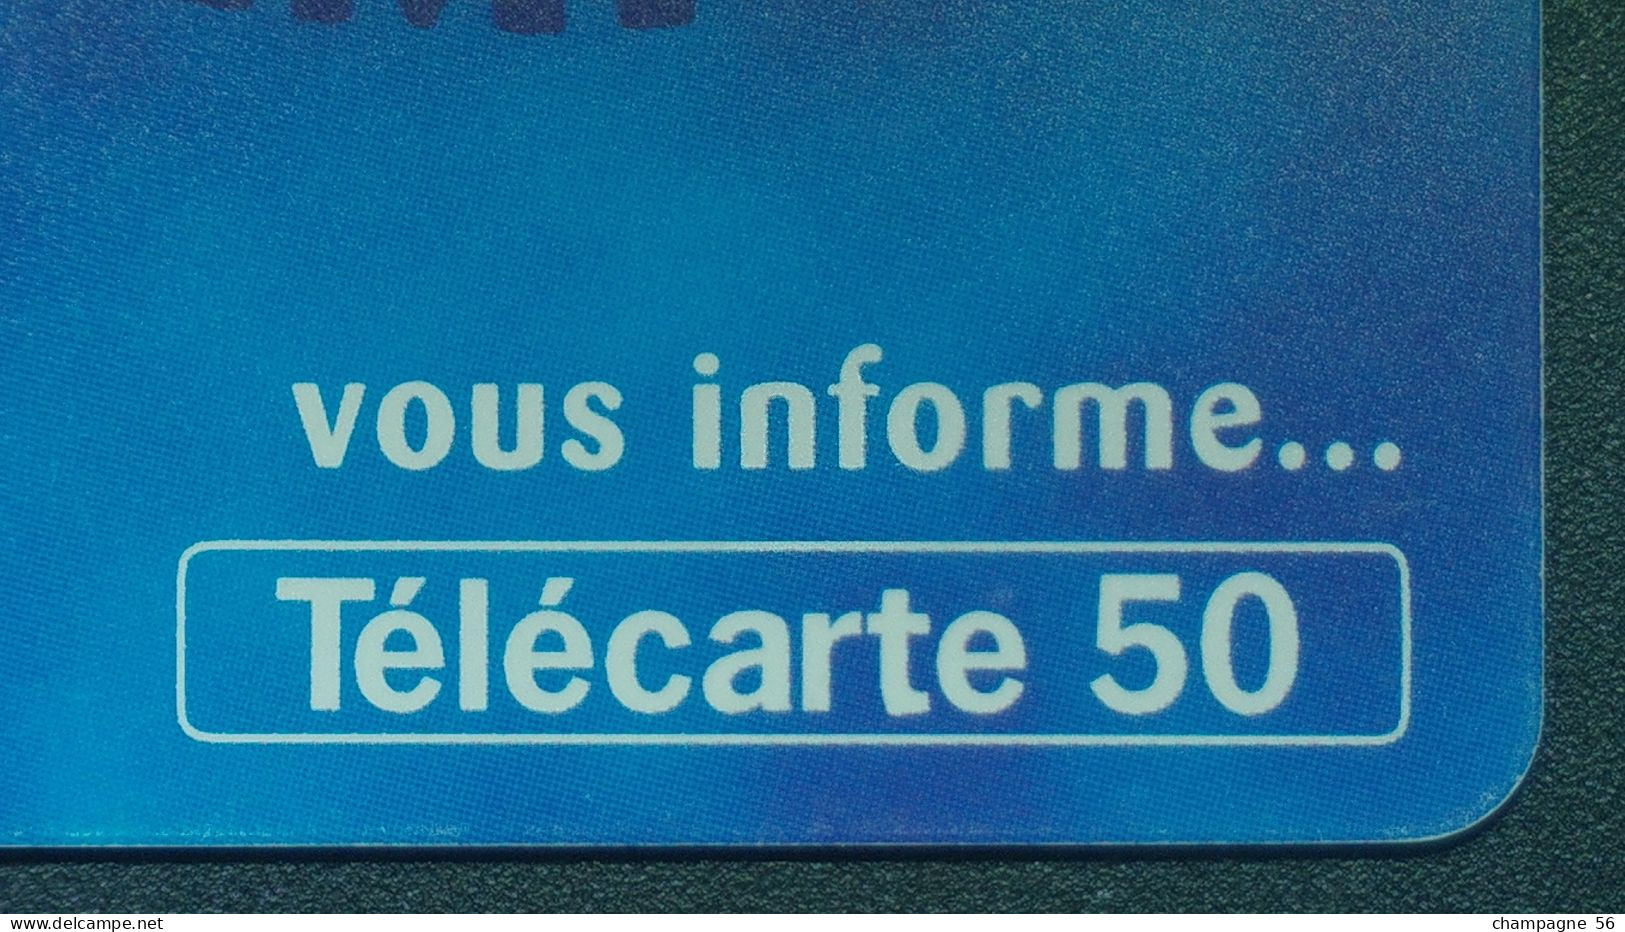 VARIÉTÉS FRANCE 97 F804  50 / 11 / 97 SO3 LE 36-15 EMPLOI   50 UNITES UTILISÉE